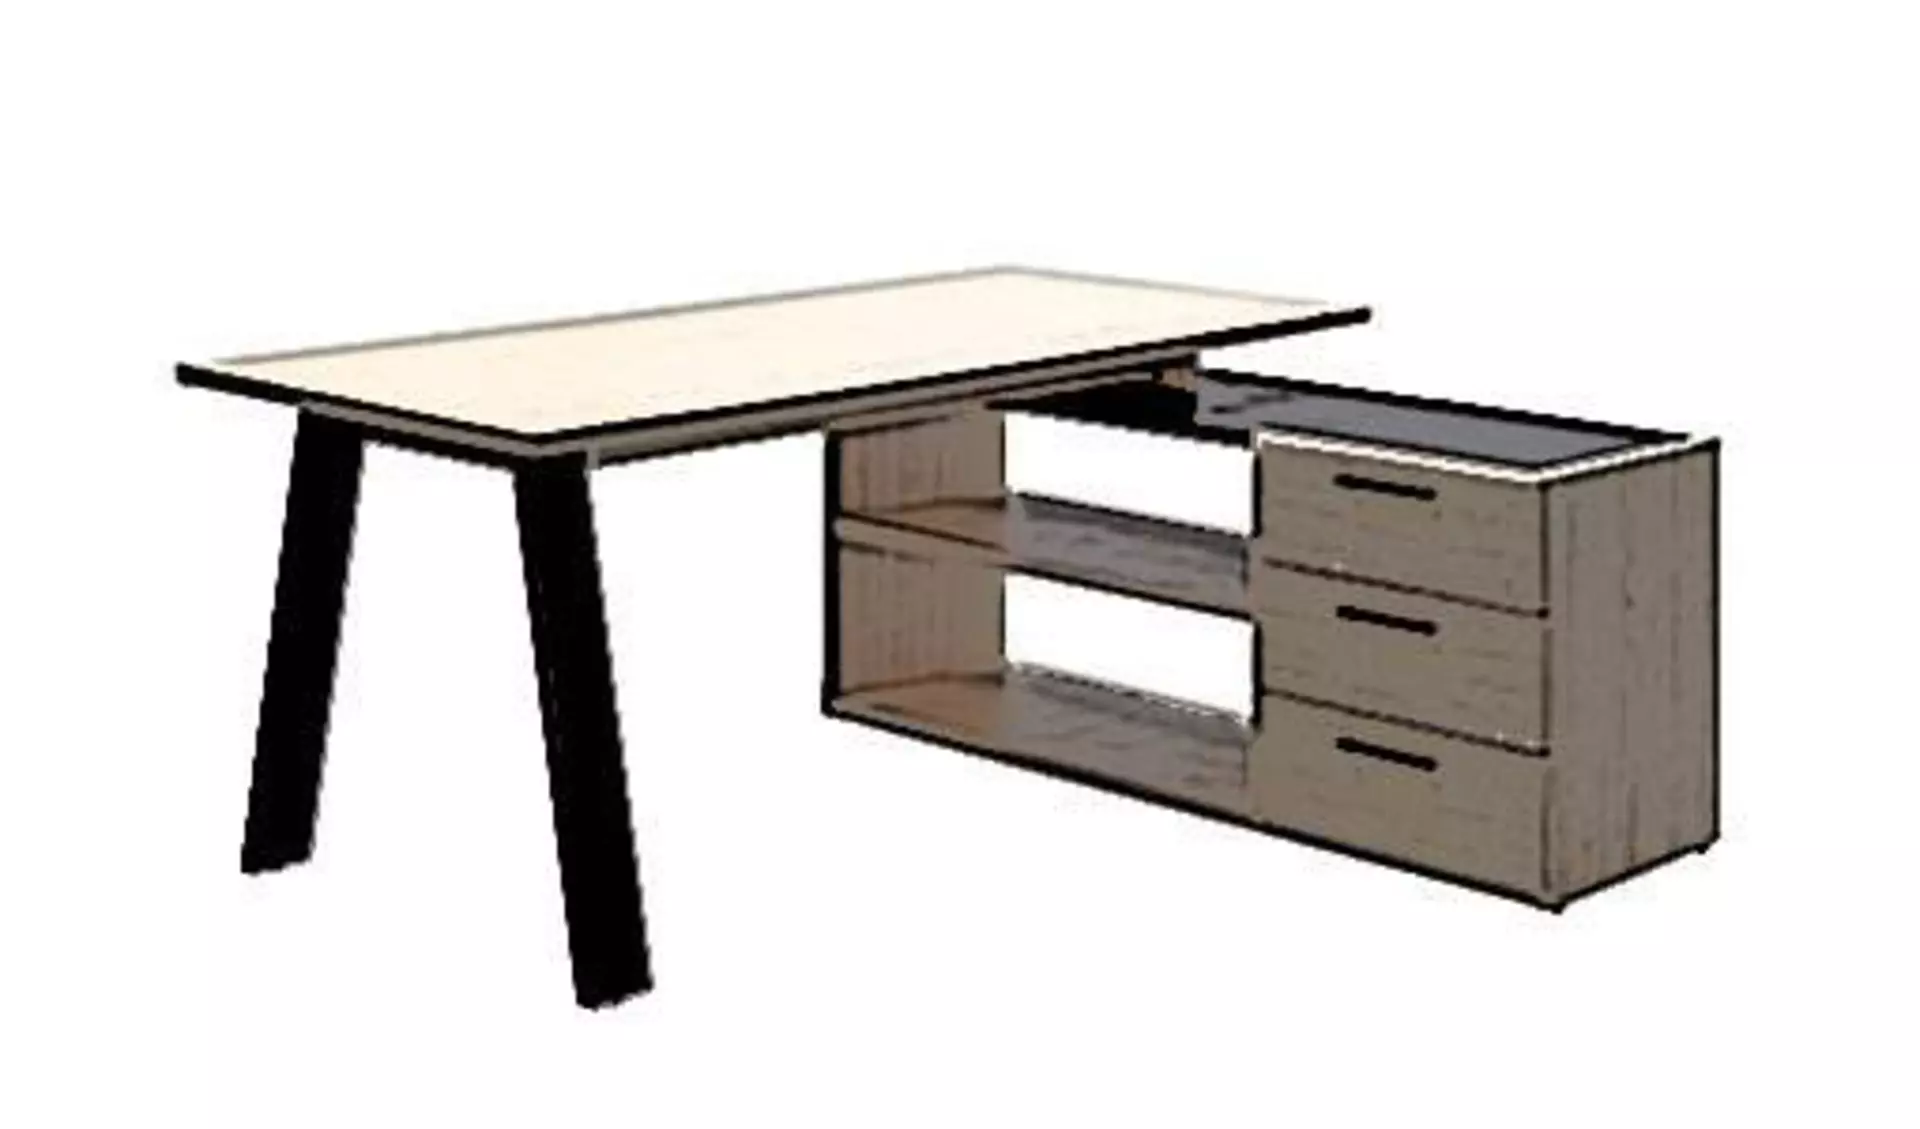 Eckschreibtisch aus Holz mit einer Schreibtischplatte auf der linken Seite und Regalfächer, sowie Schubladen auf der rechten Seite. Der stilisierte Eckschreibtisch steht für alle Bürotische diese Art.